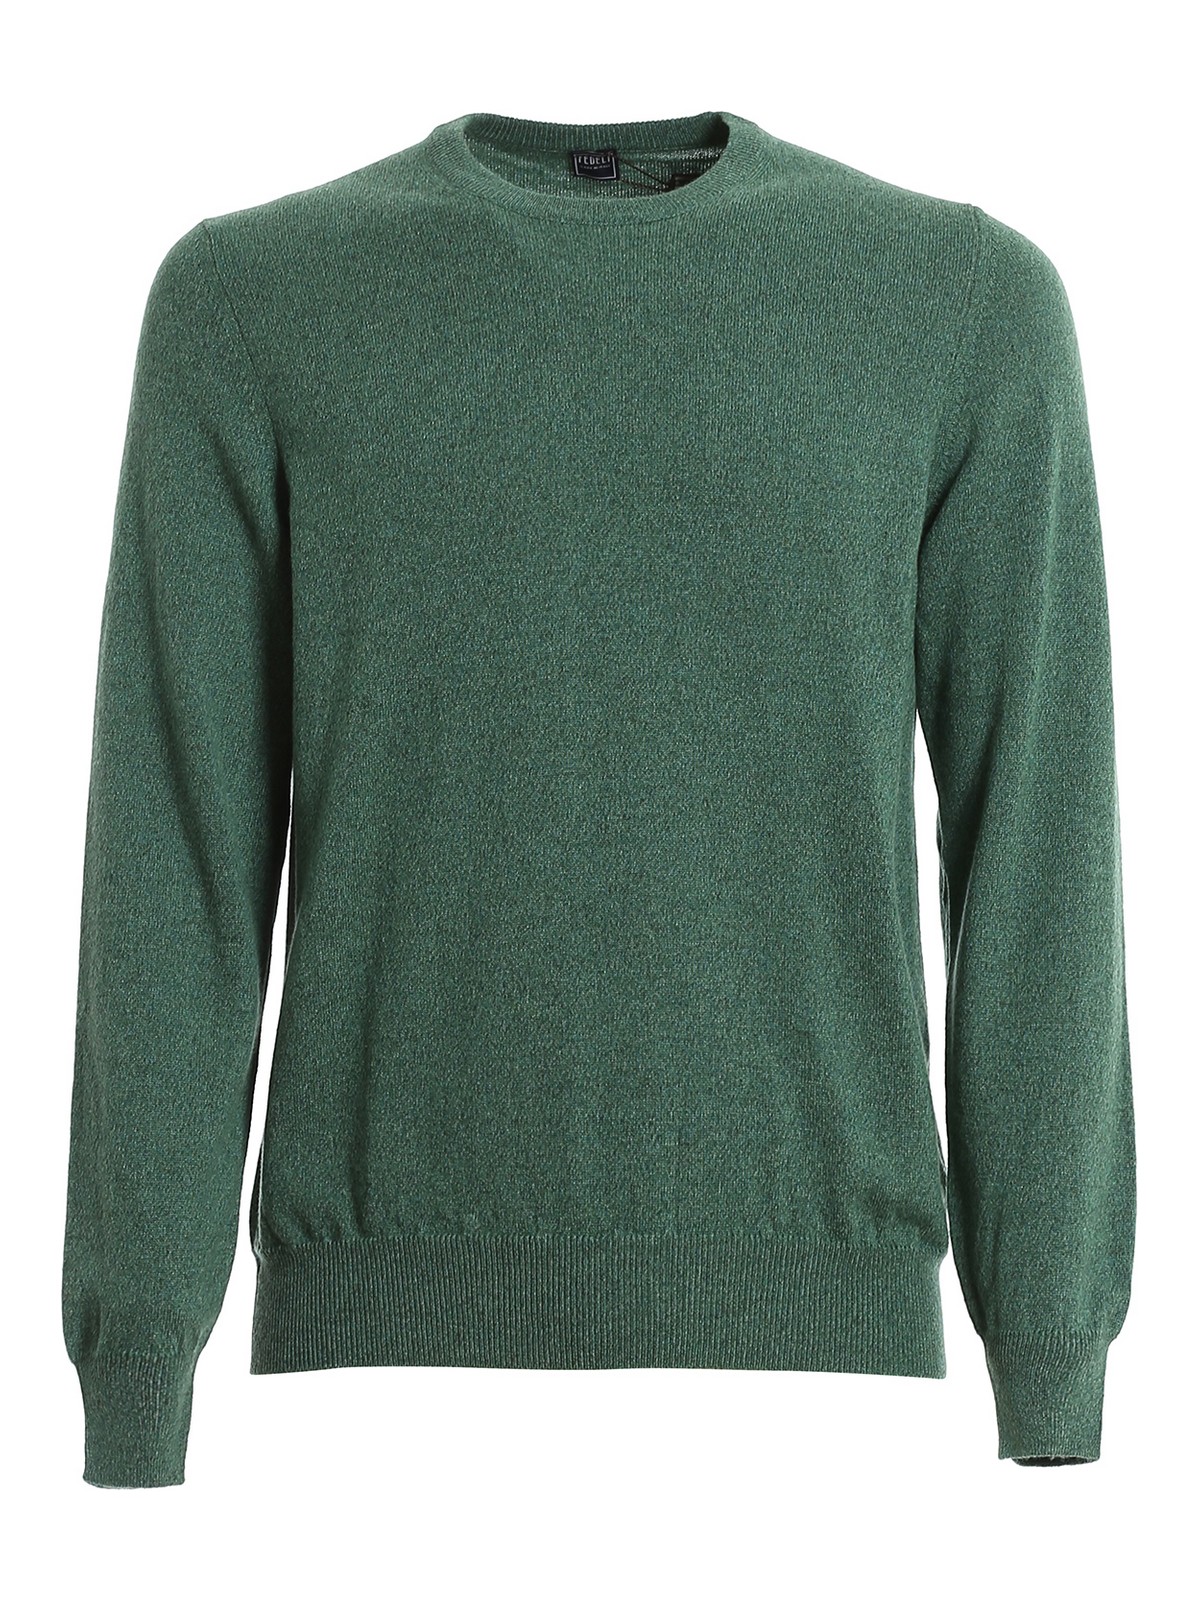 Crew necks Fedeli - Pure cashmere sweater - 3UI07001IRLANDA | iKRIX.com